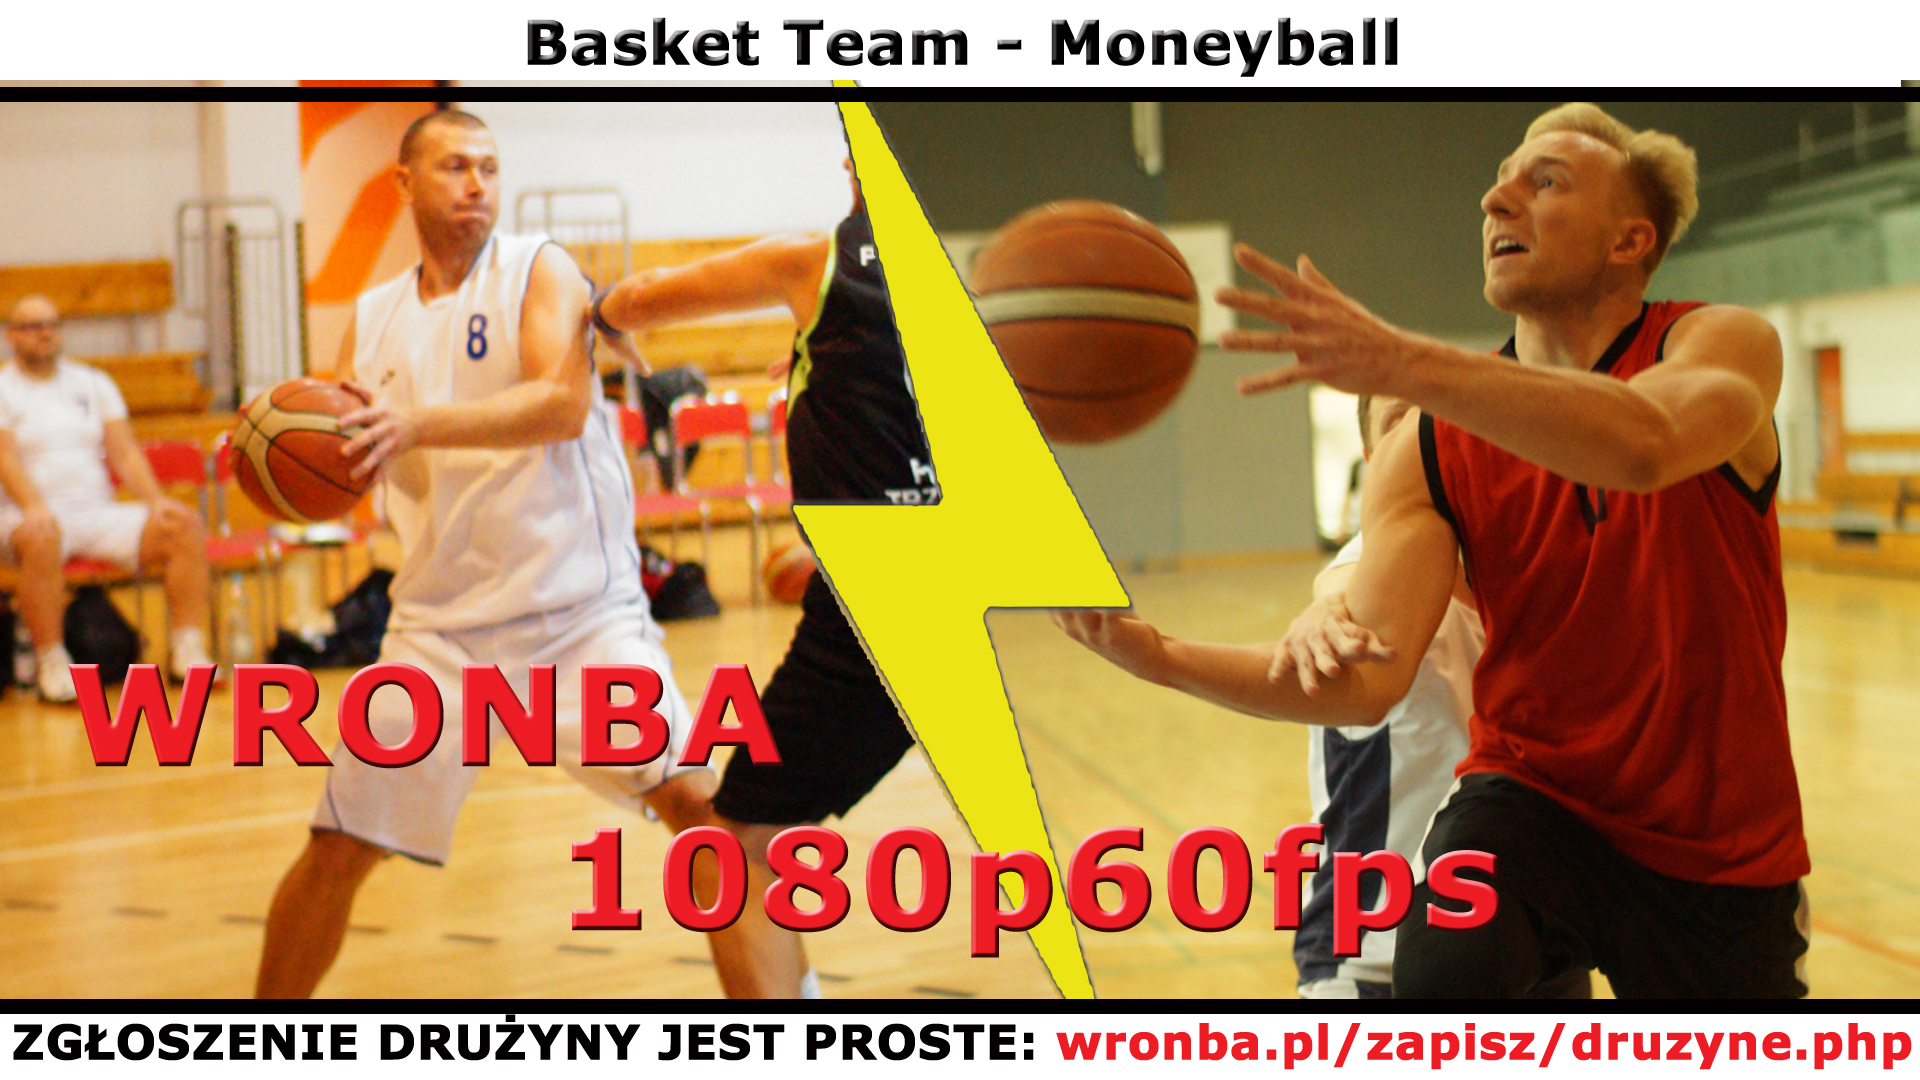 wronba.pl/uploads/wysiwyg/image/youtube_14537_mecz.jpg